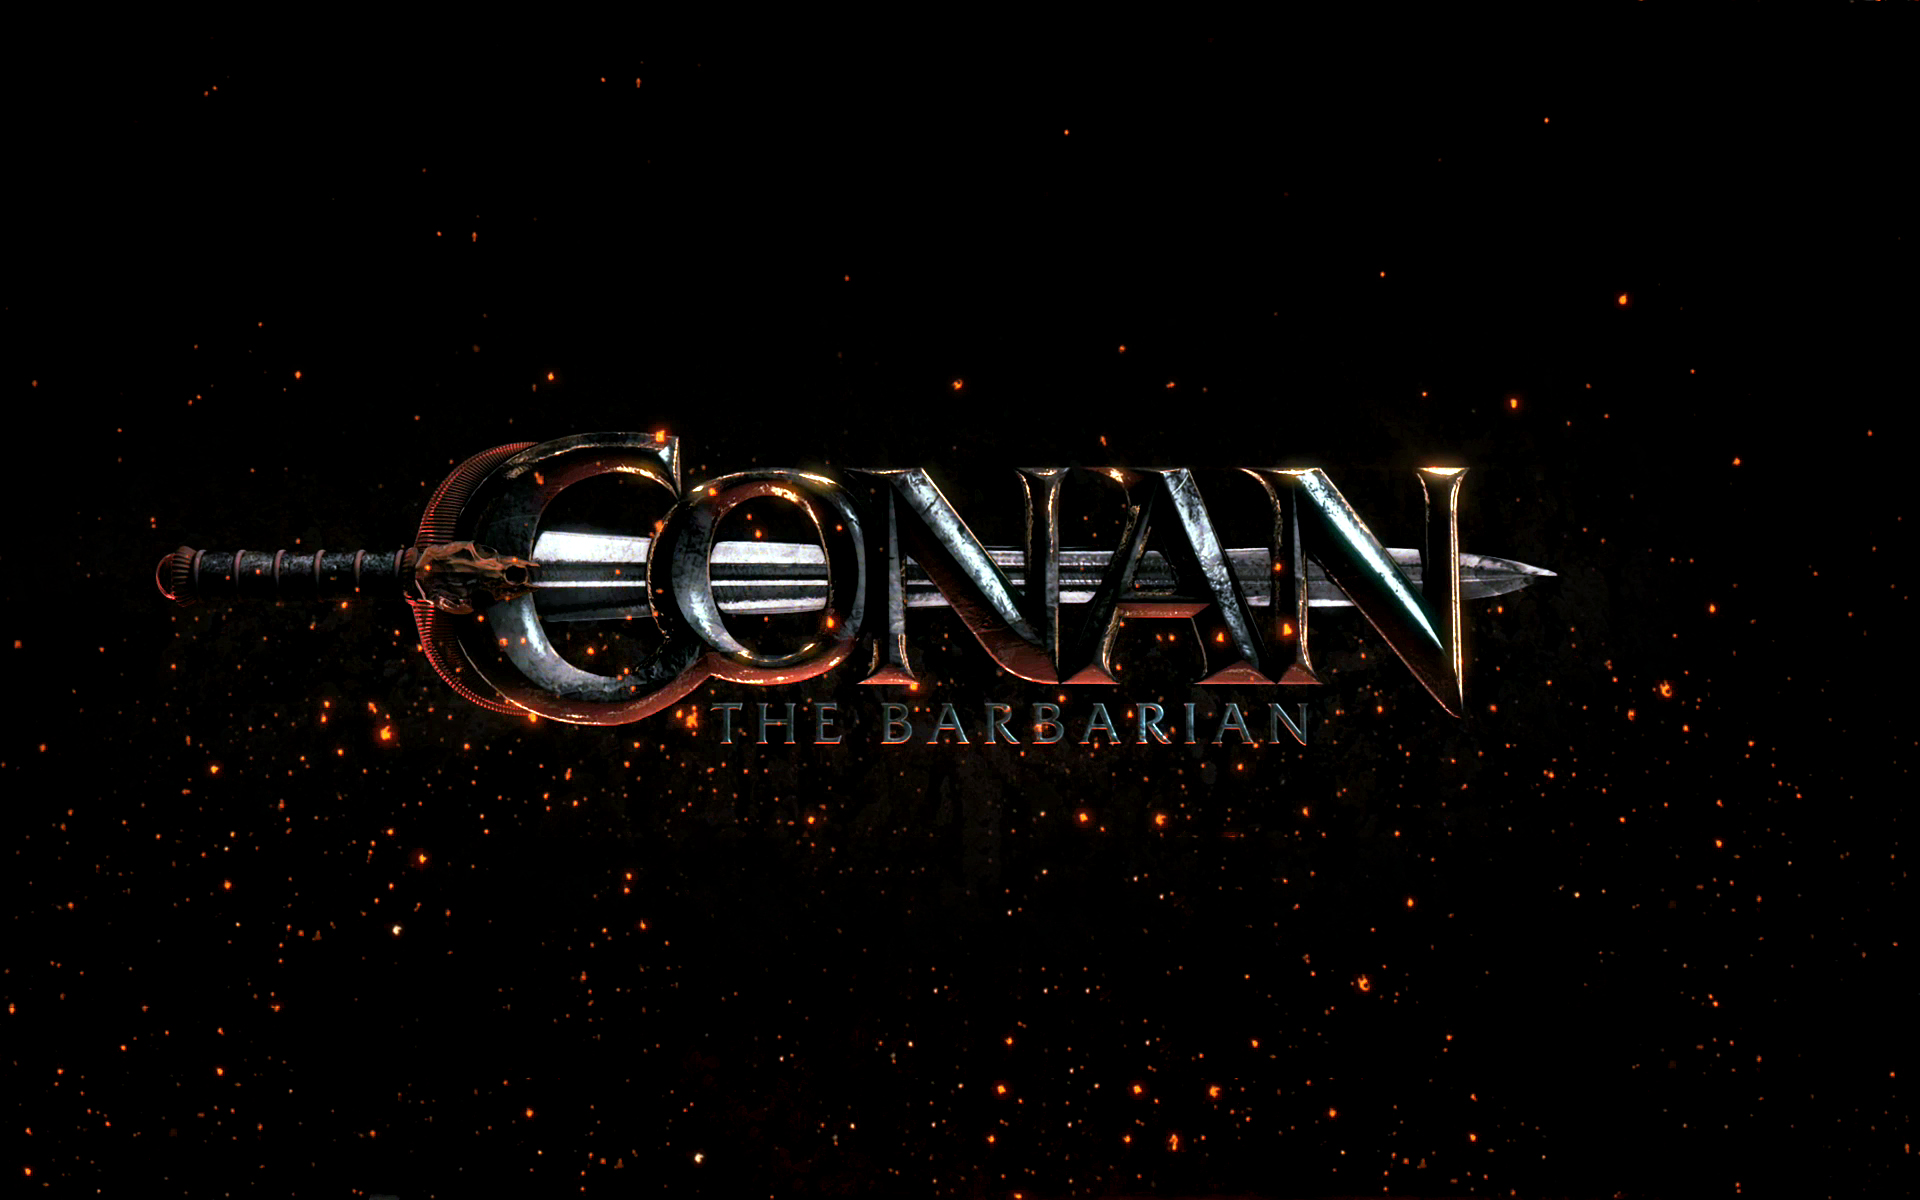 Conan The Barbarian Wallpaper